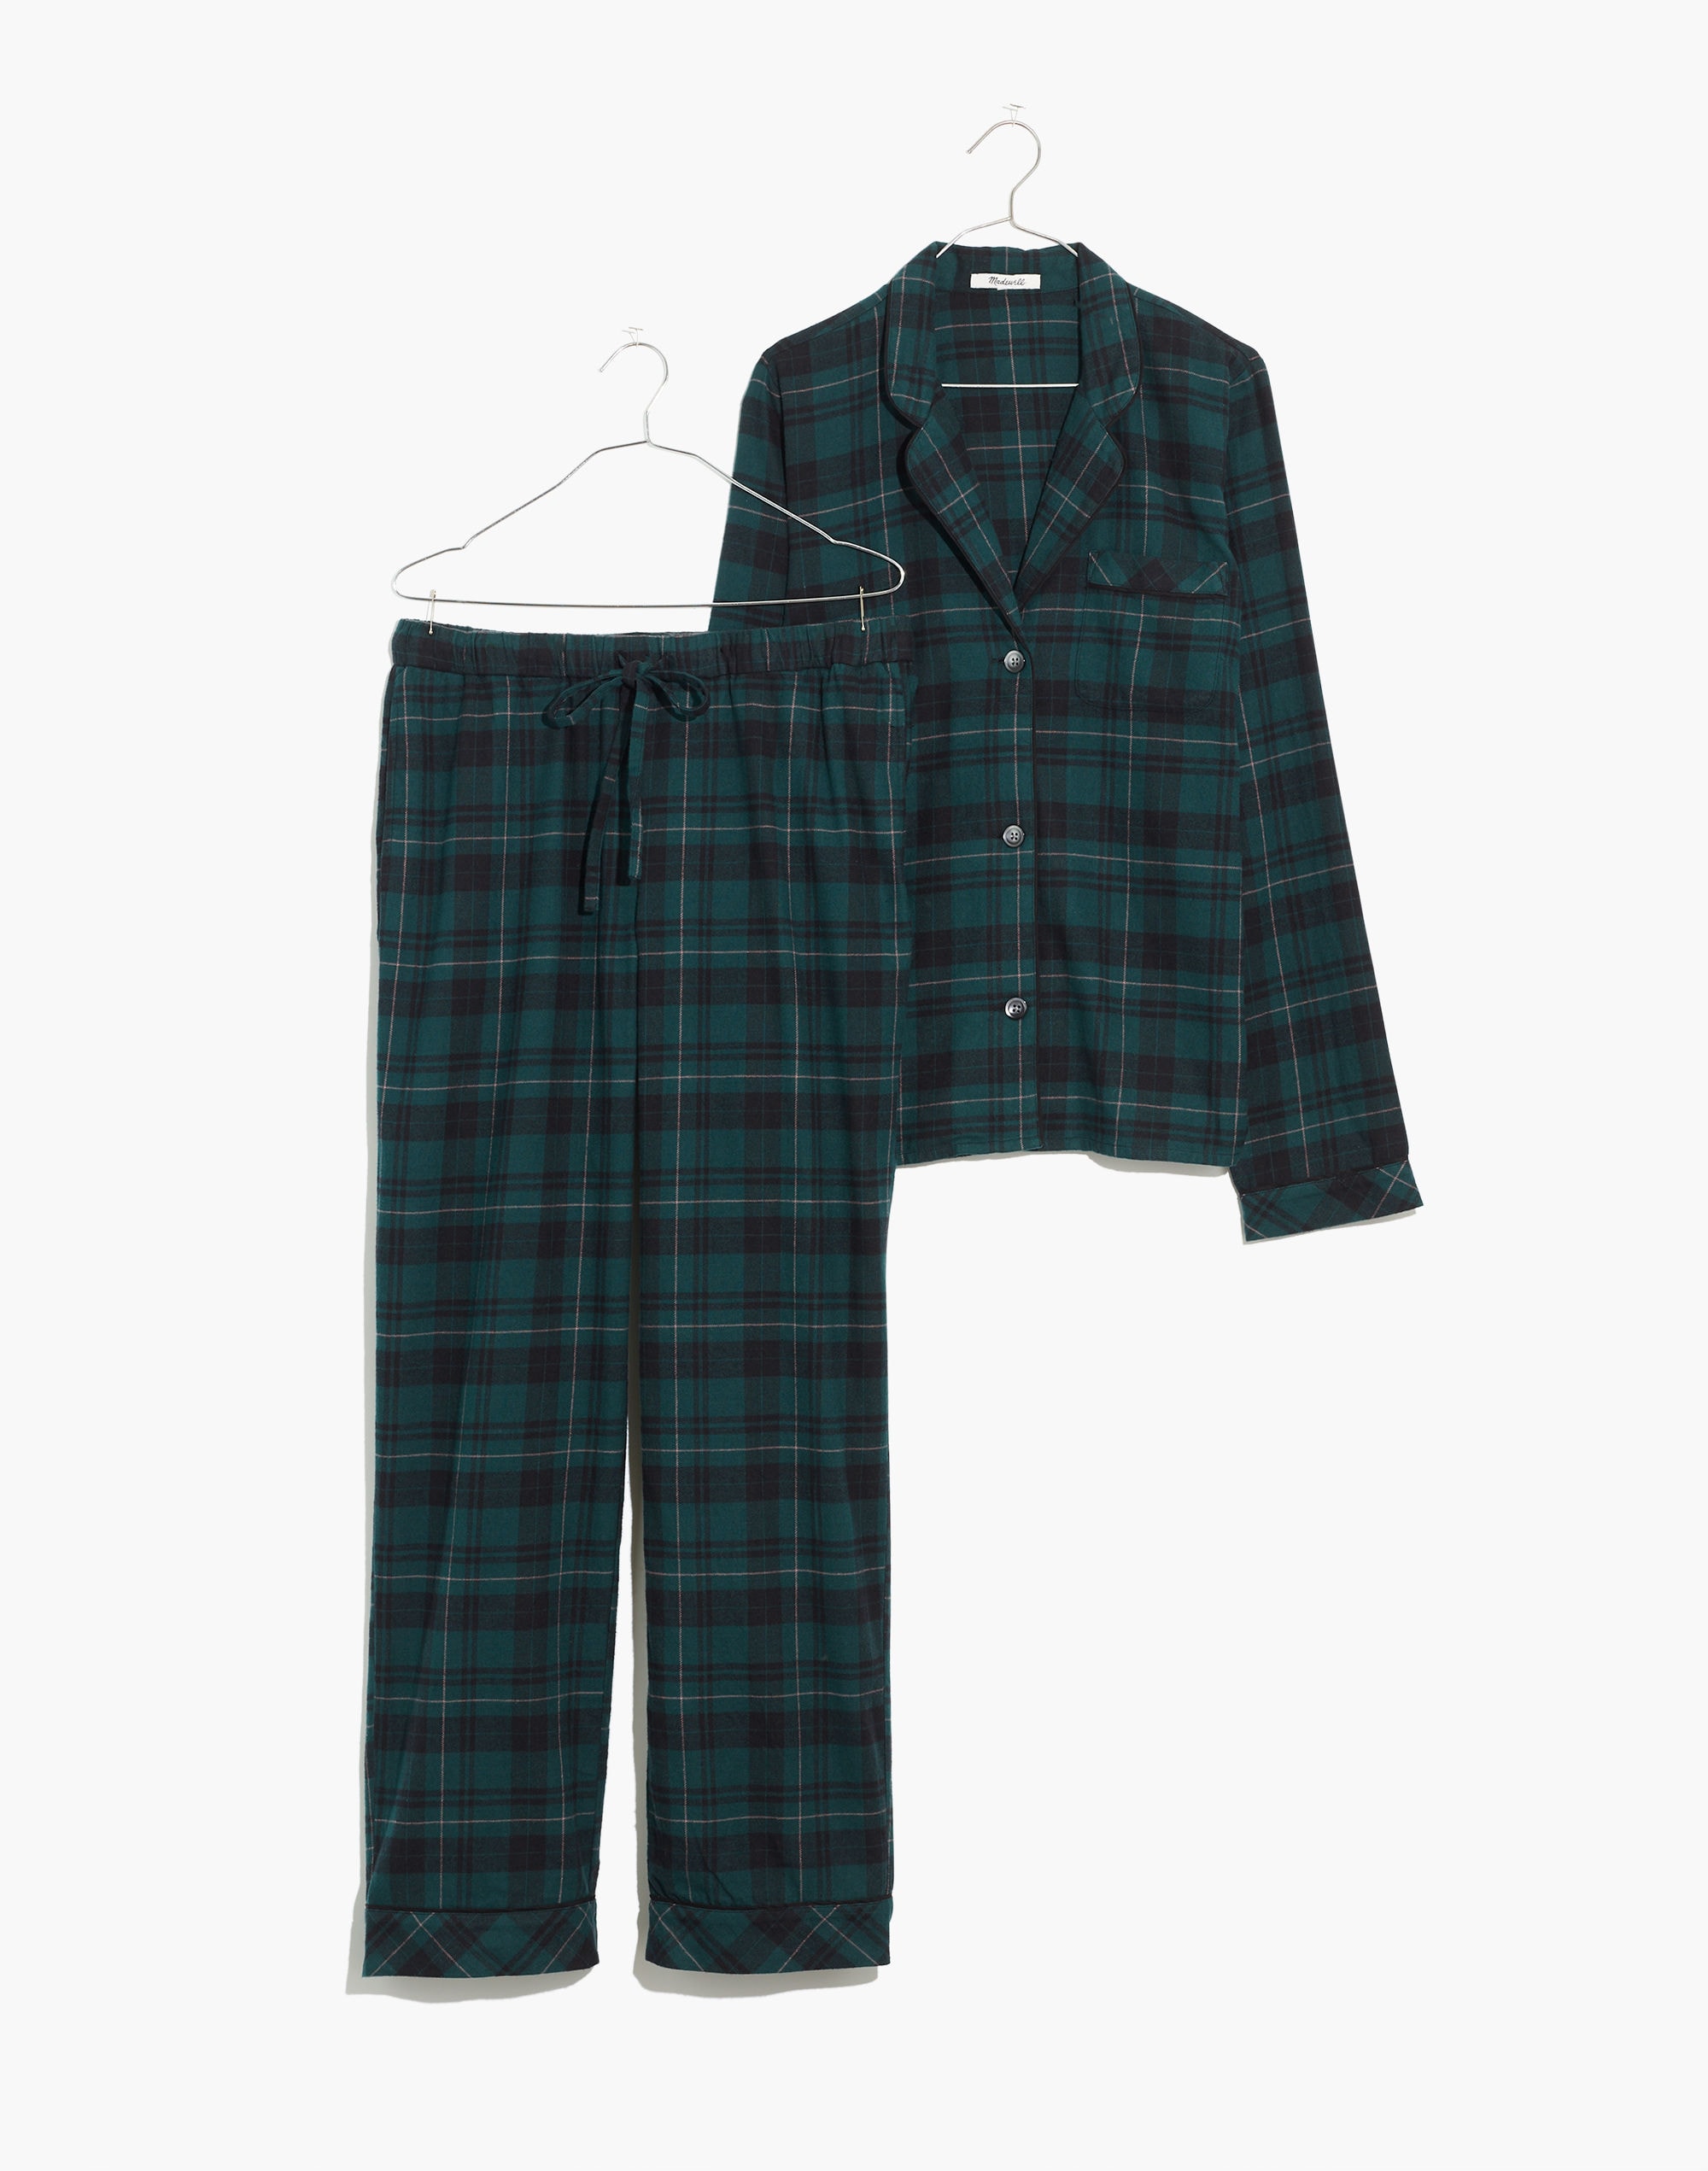 Madewell Plaid Flannel Pajama Set